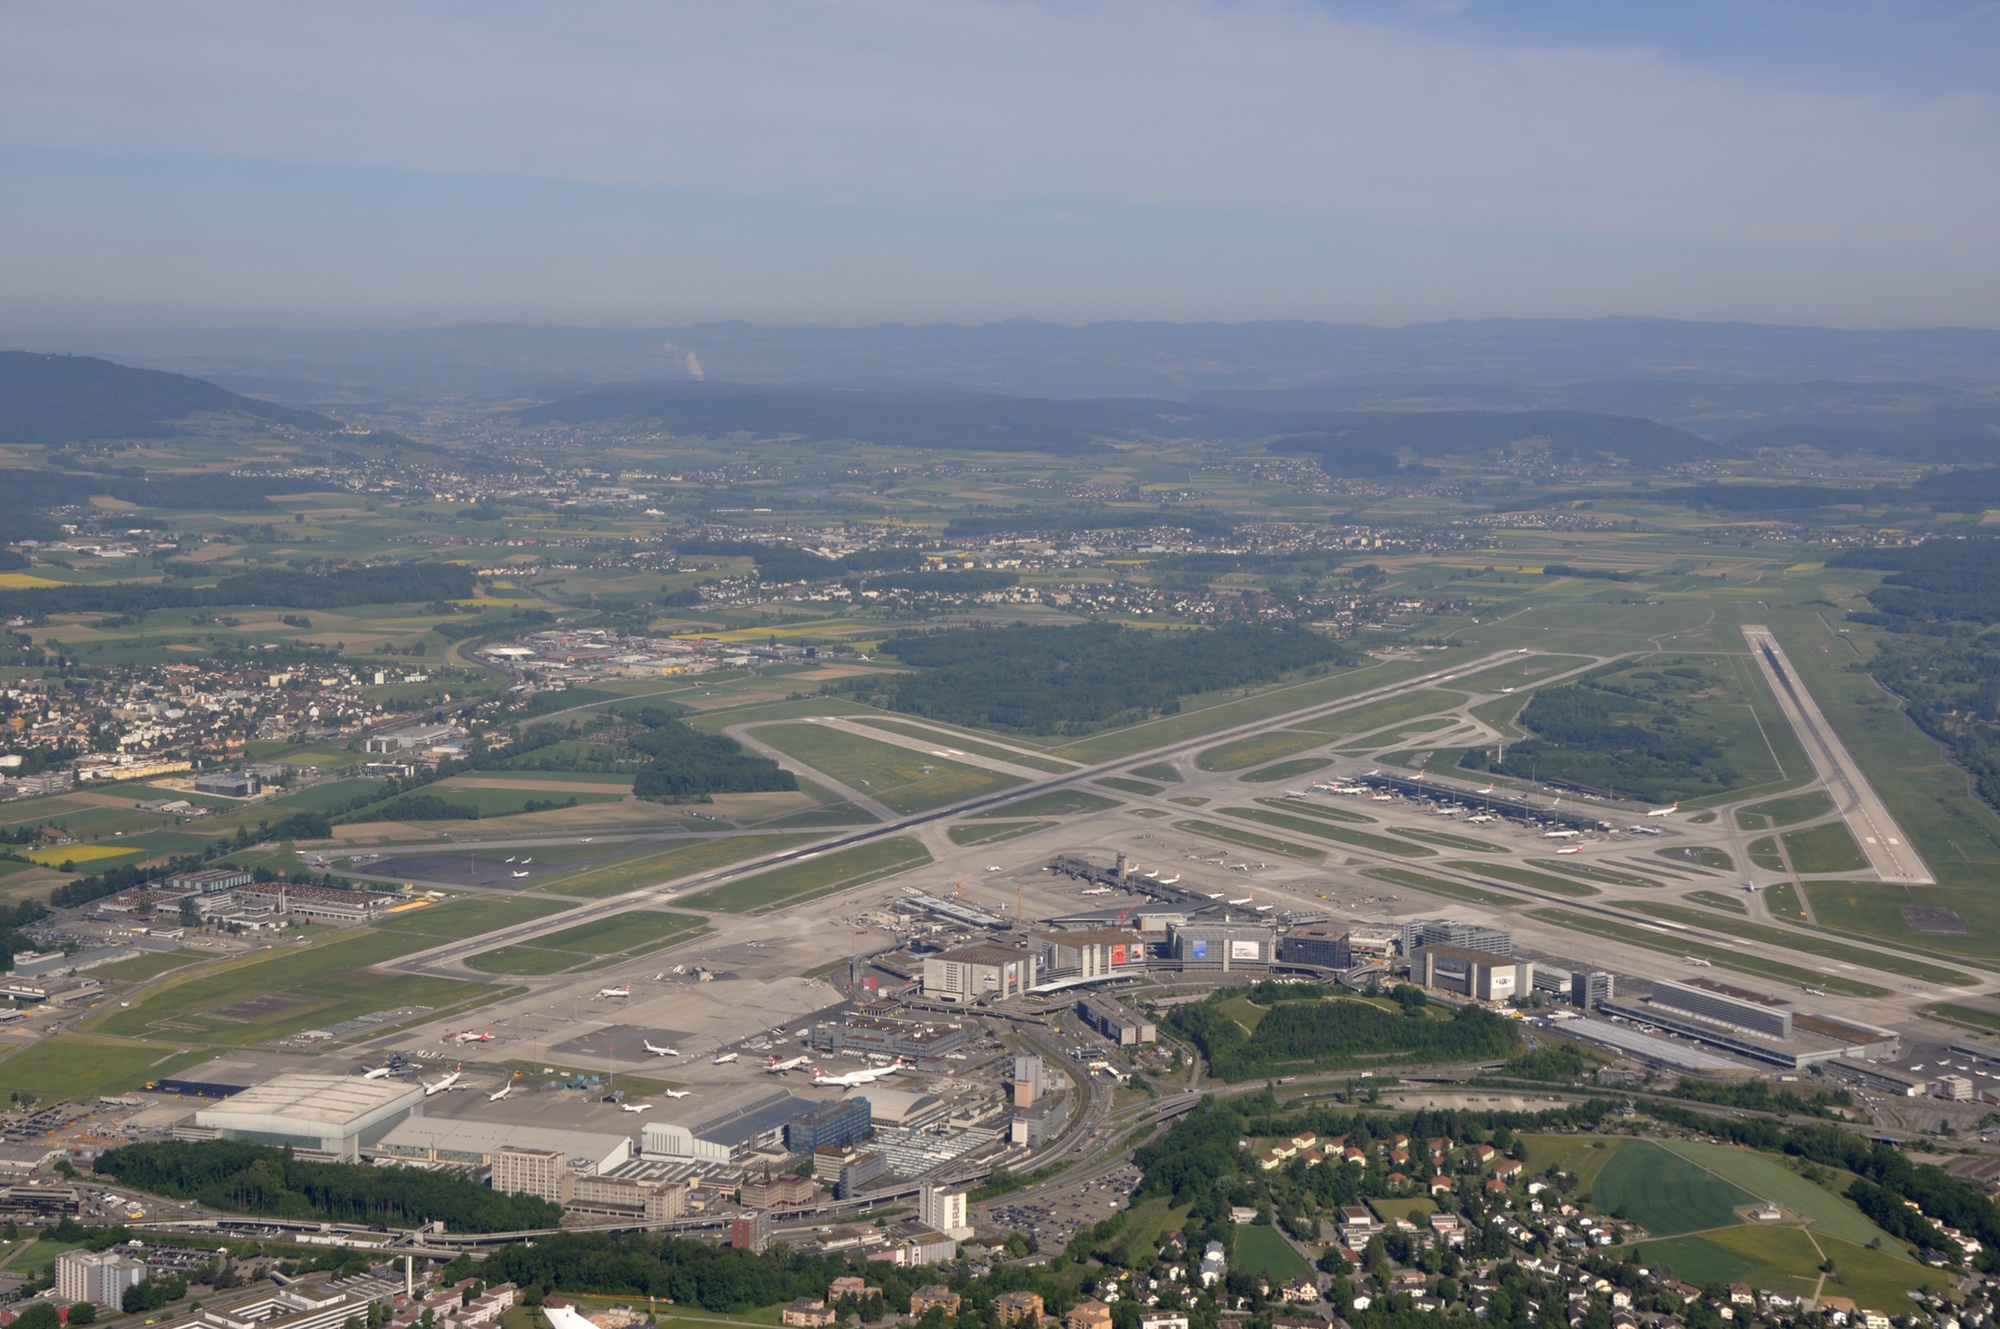 Foto: Flughafen Zürich aus der Vogelperspektive